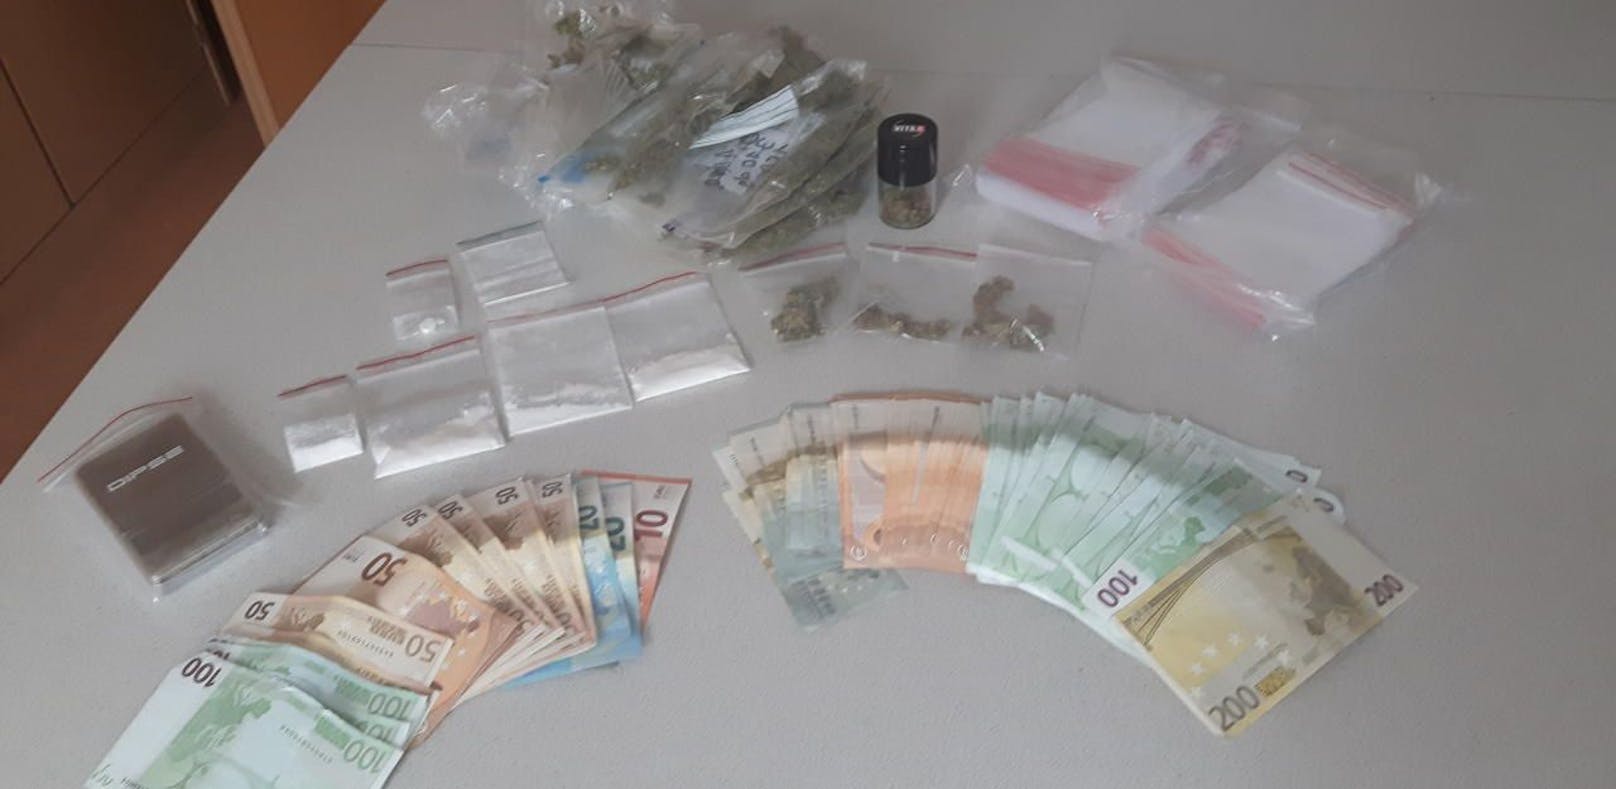 In der Wohnung des Mannes wurden Drogen und Bargeld sichergestellt.